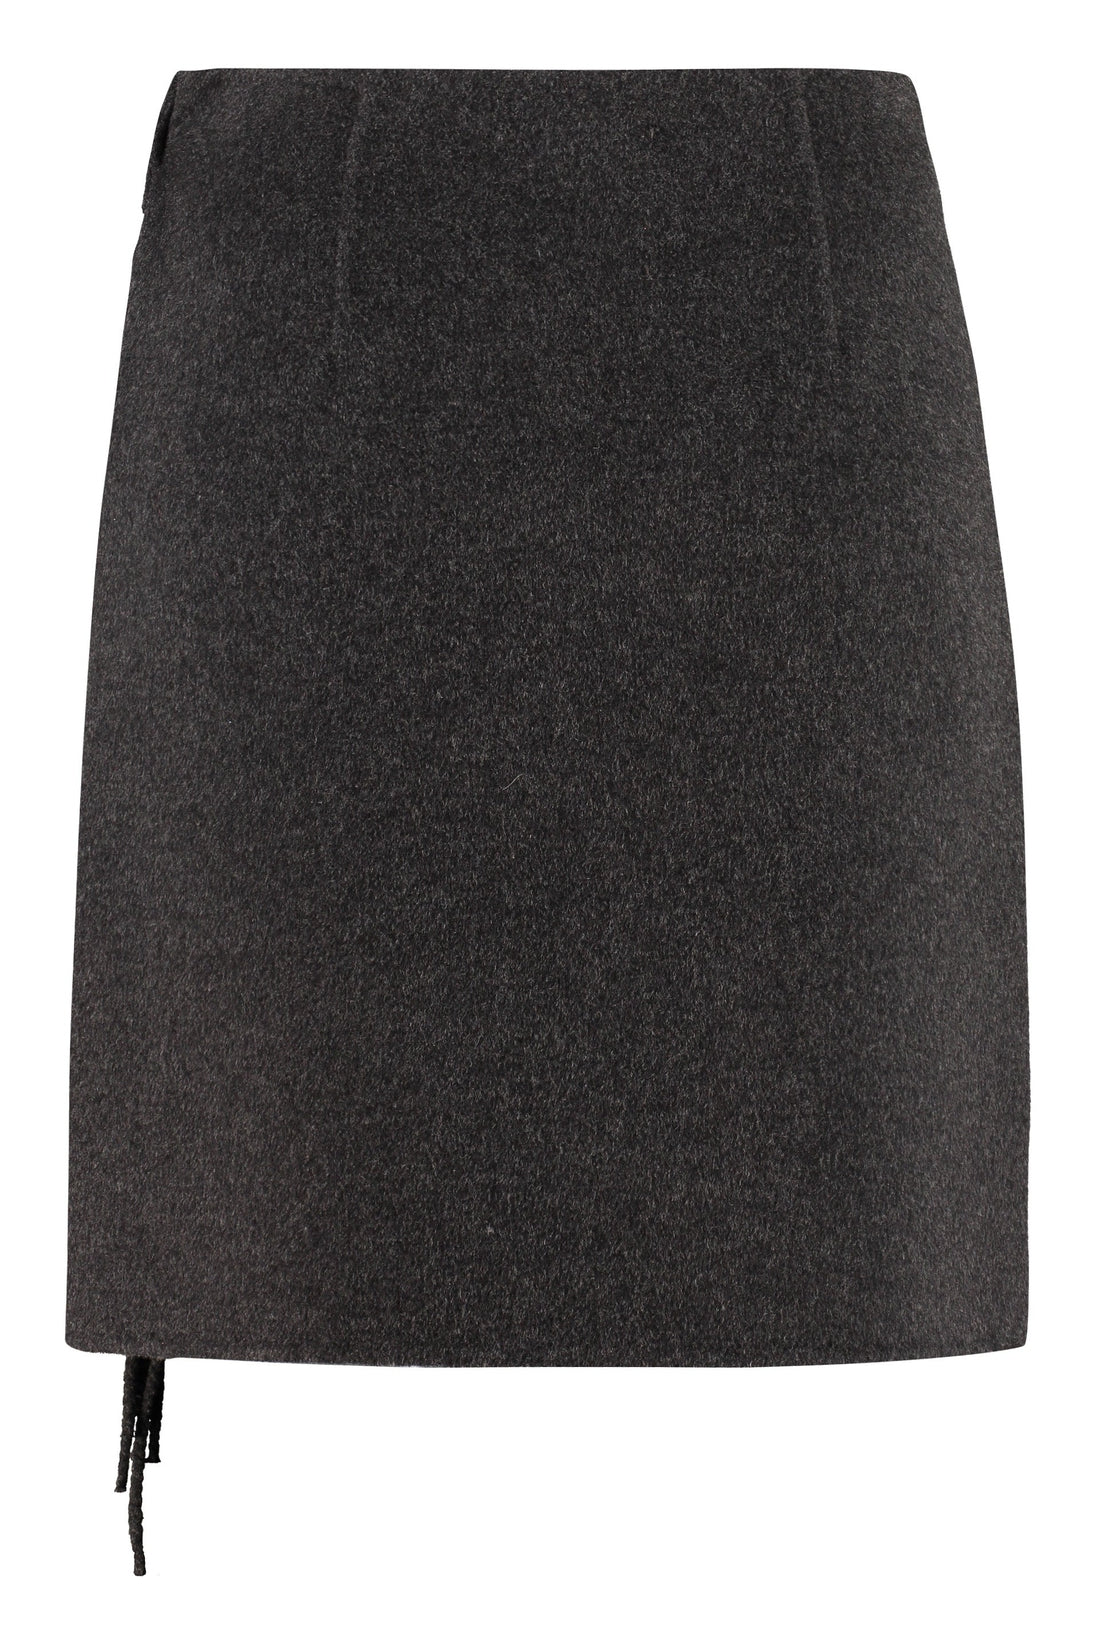 Parosh-OUTLET-SALE-Wool wrap skirt-ARCHIVIST